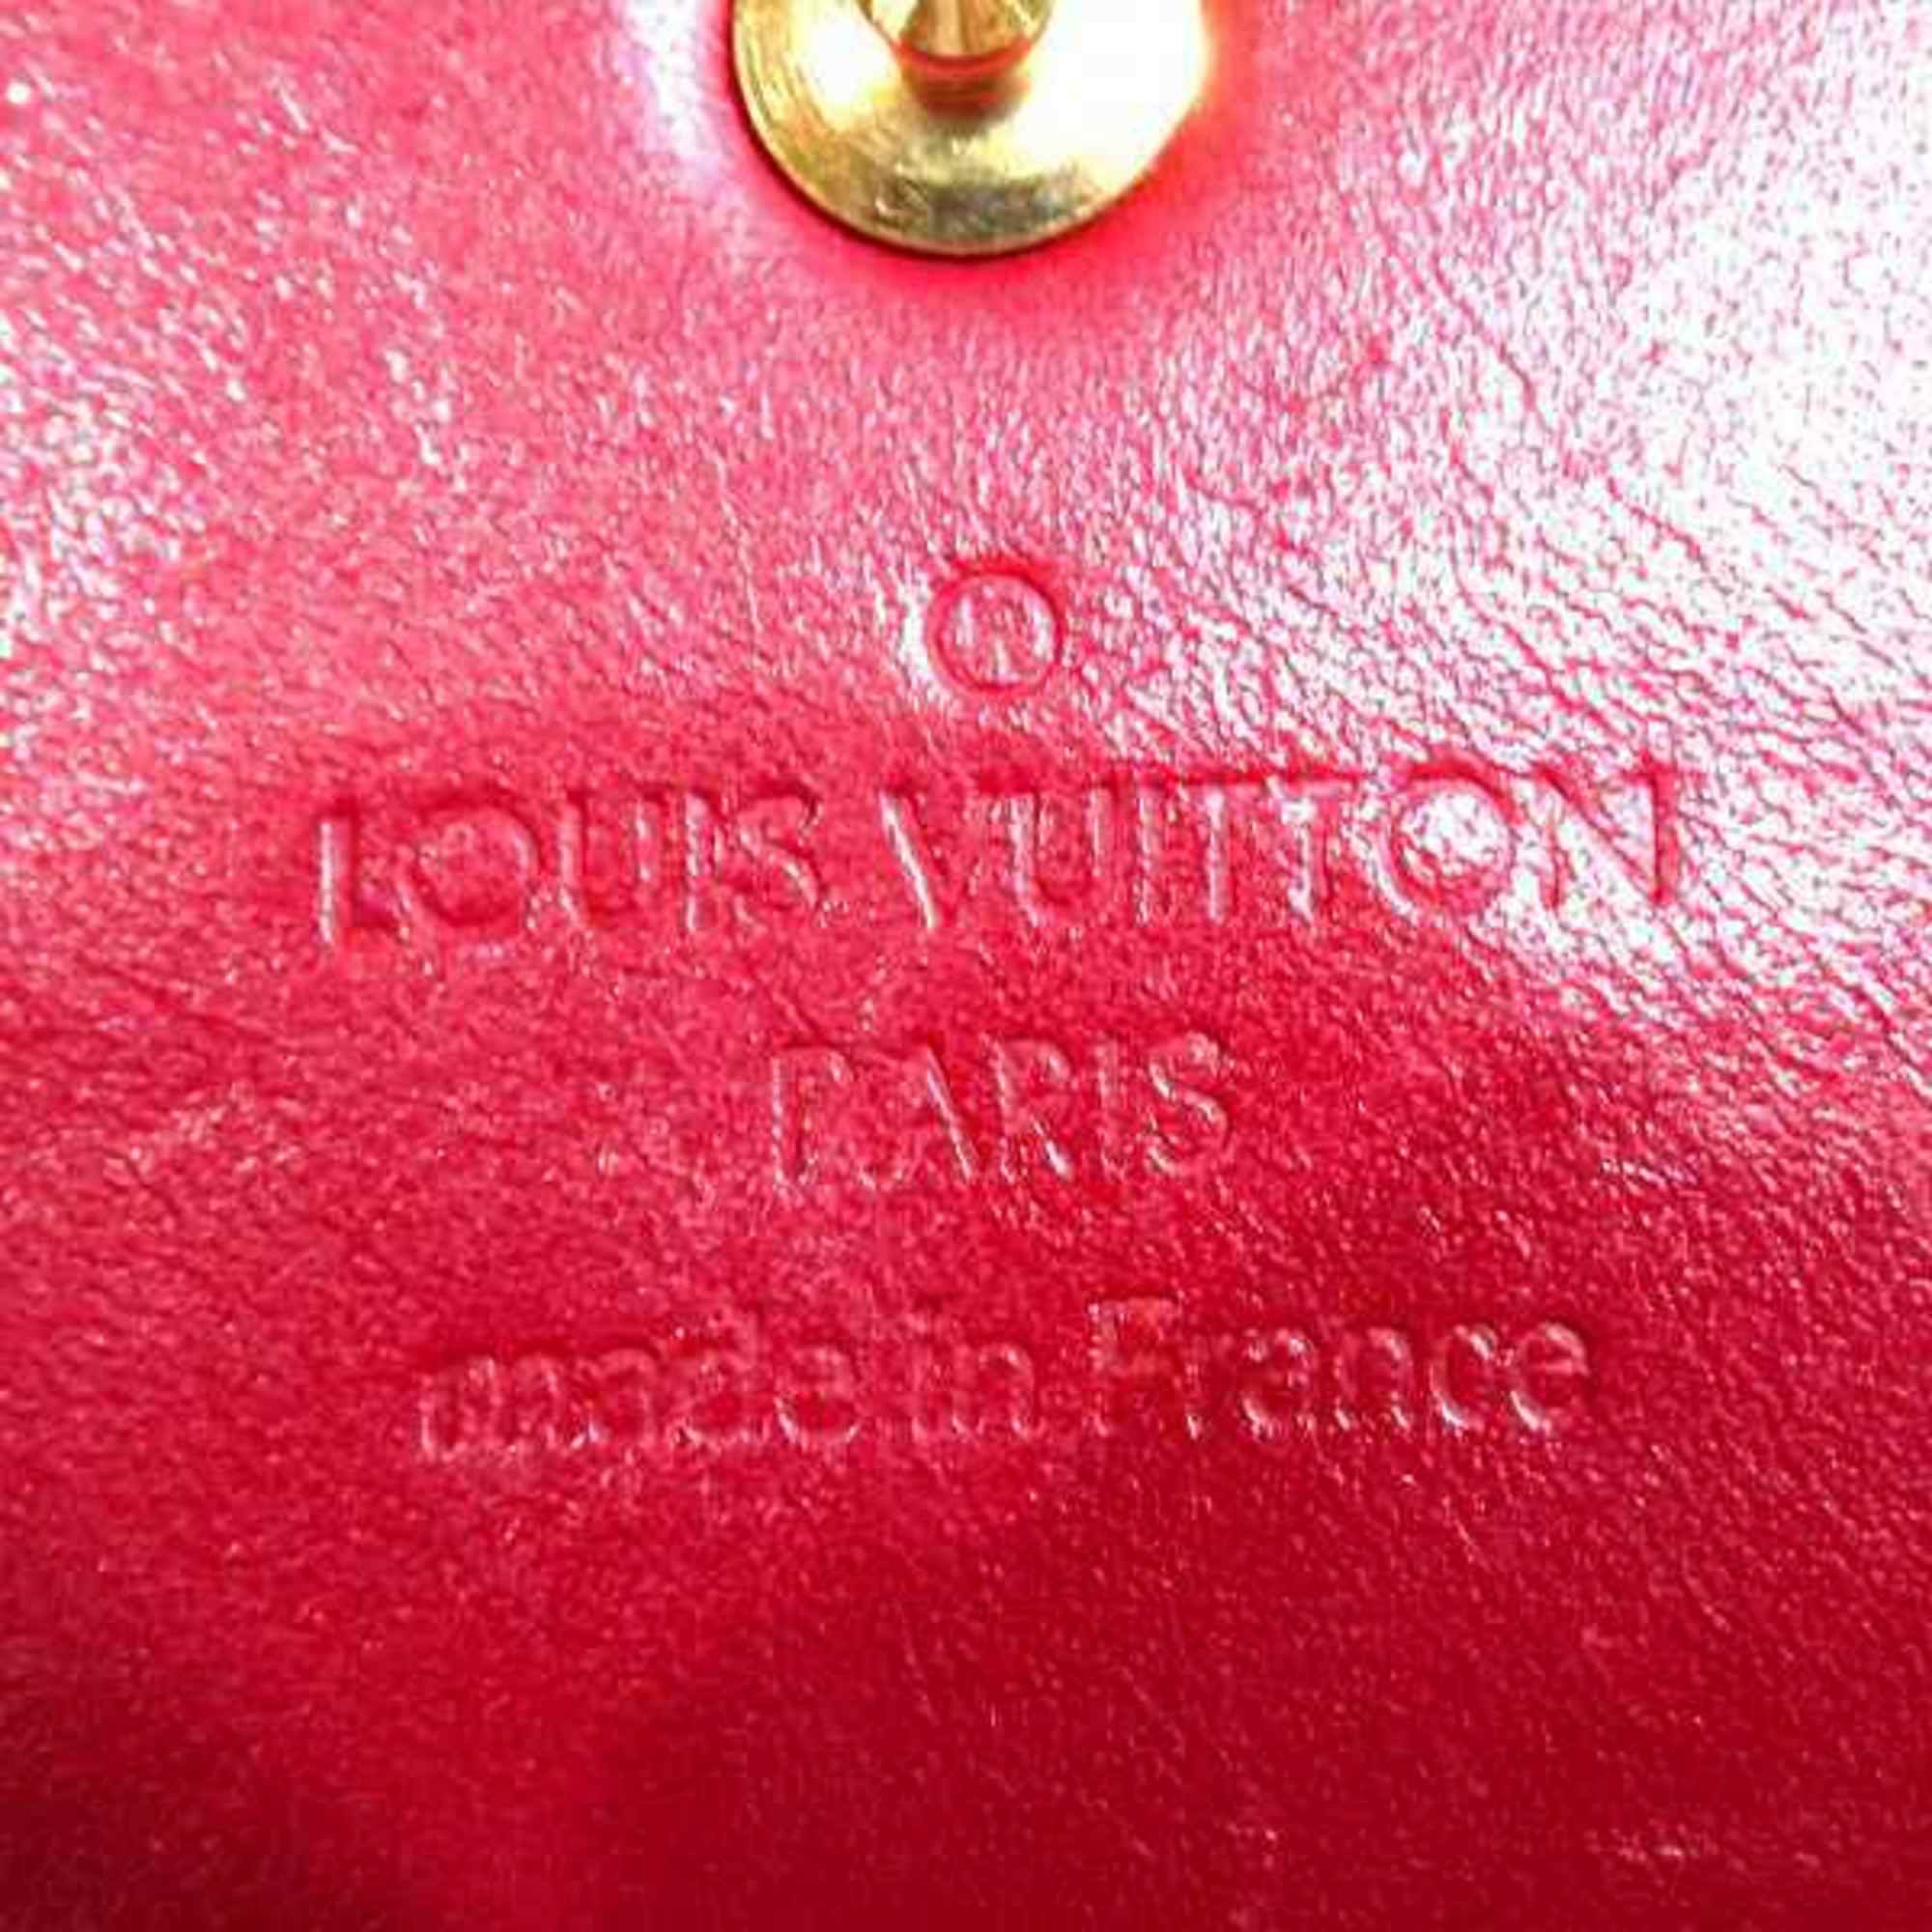 Louis Vuitton Monogram Vernis M91983 Pochette Porte Monet Credit Long Wallet Women's